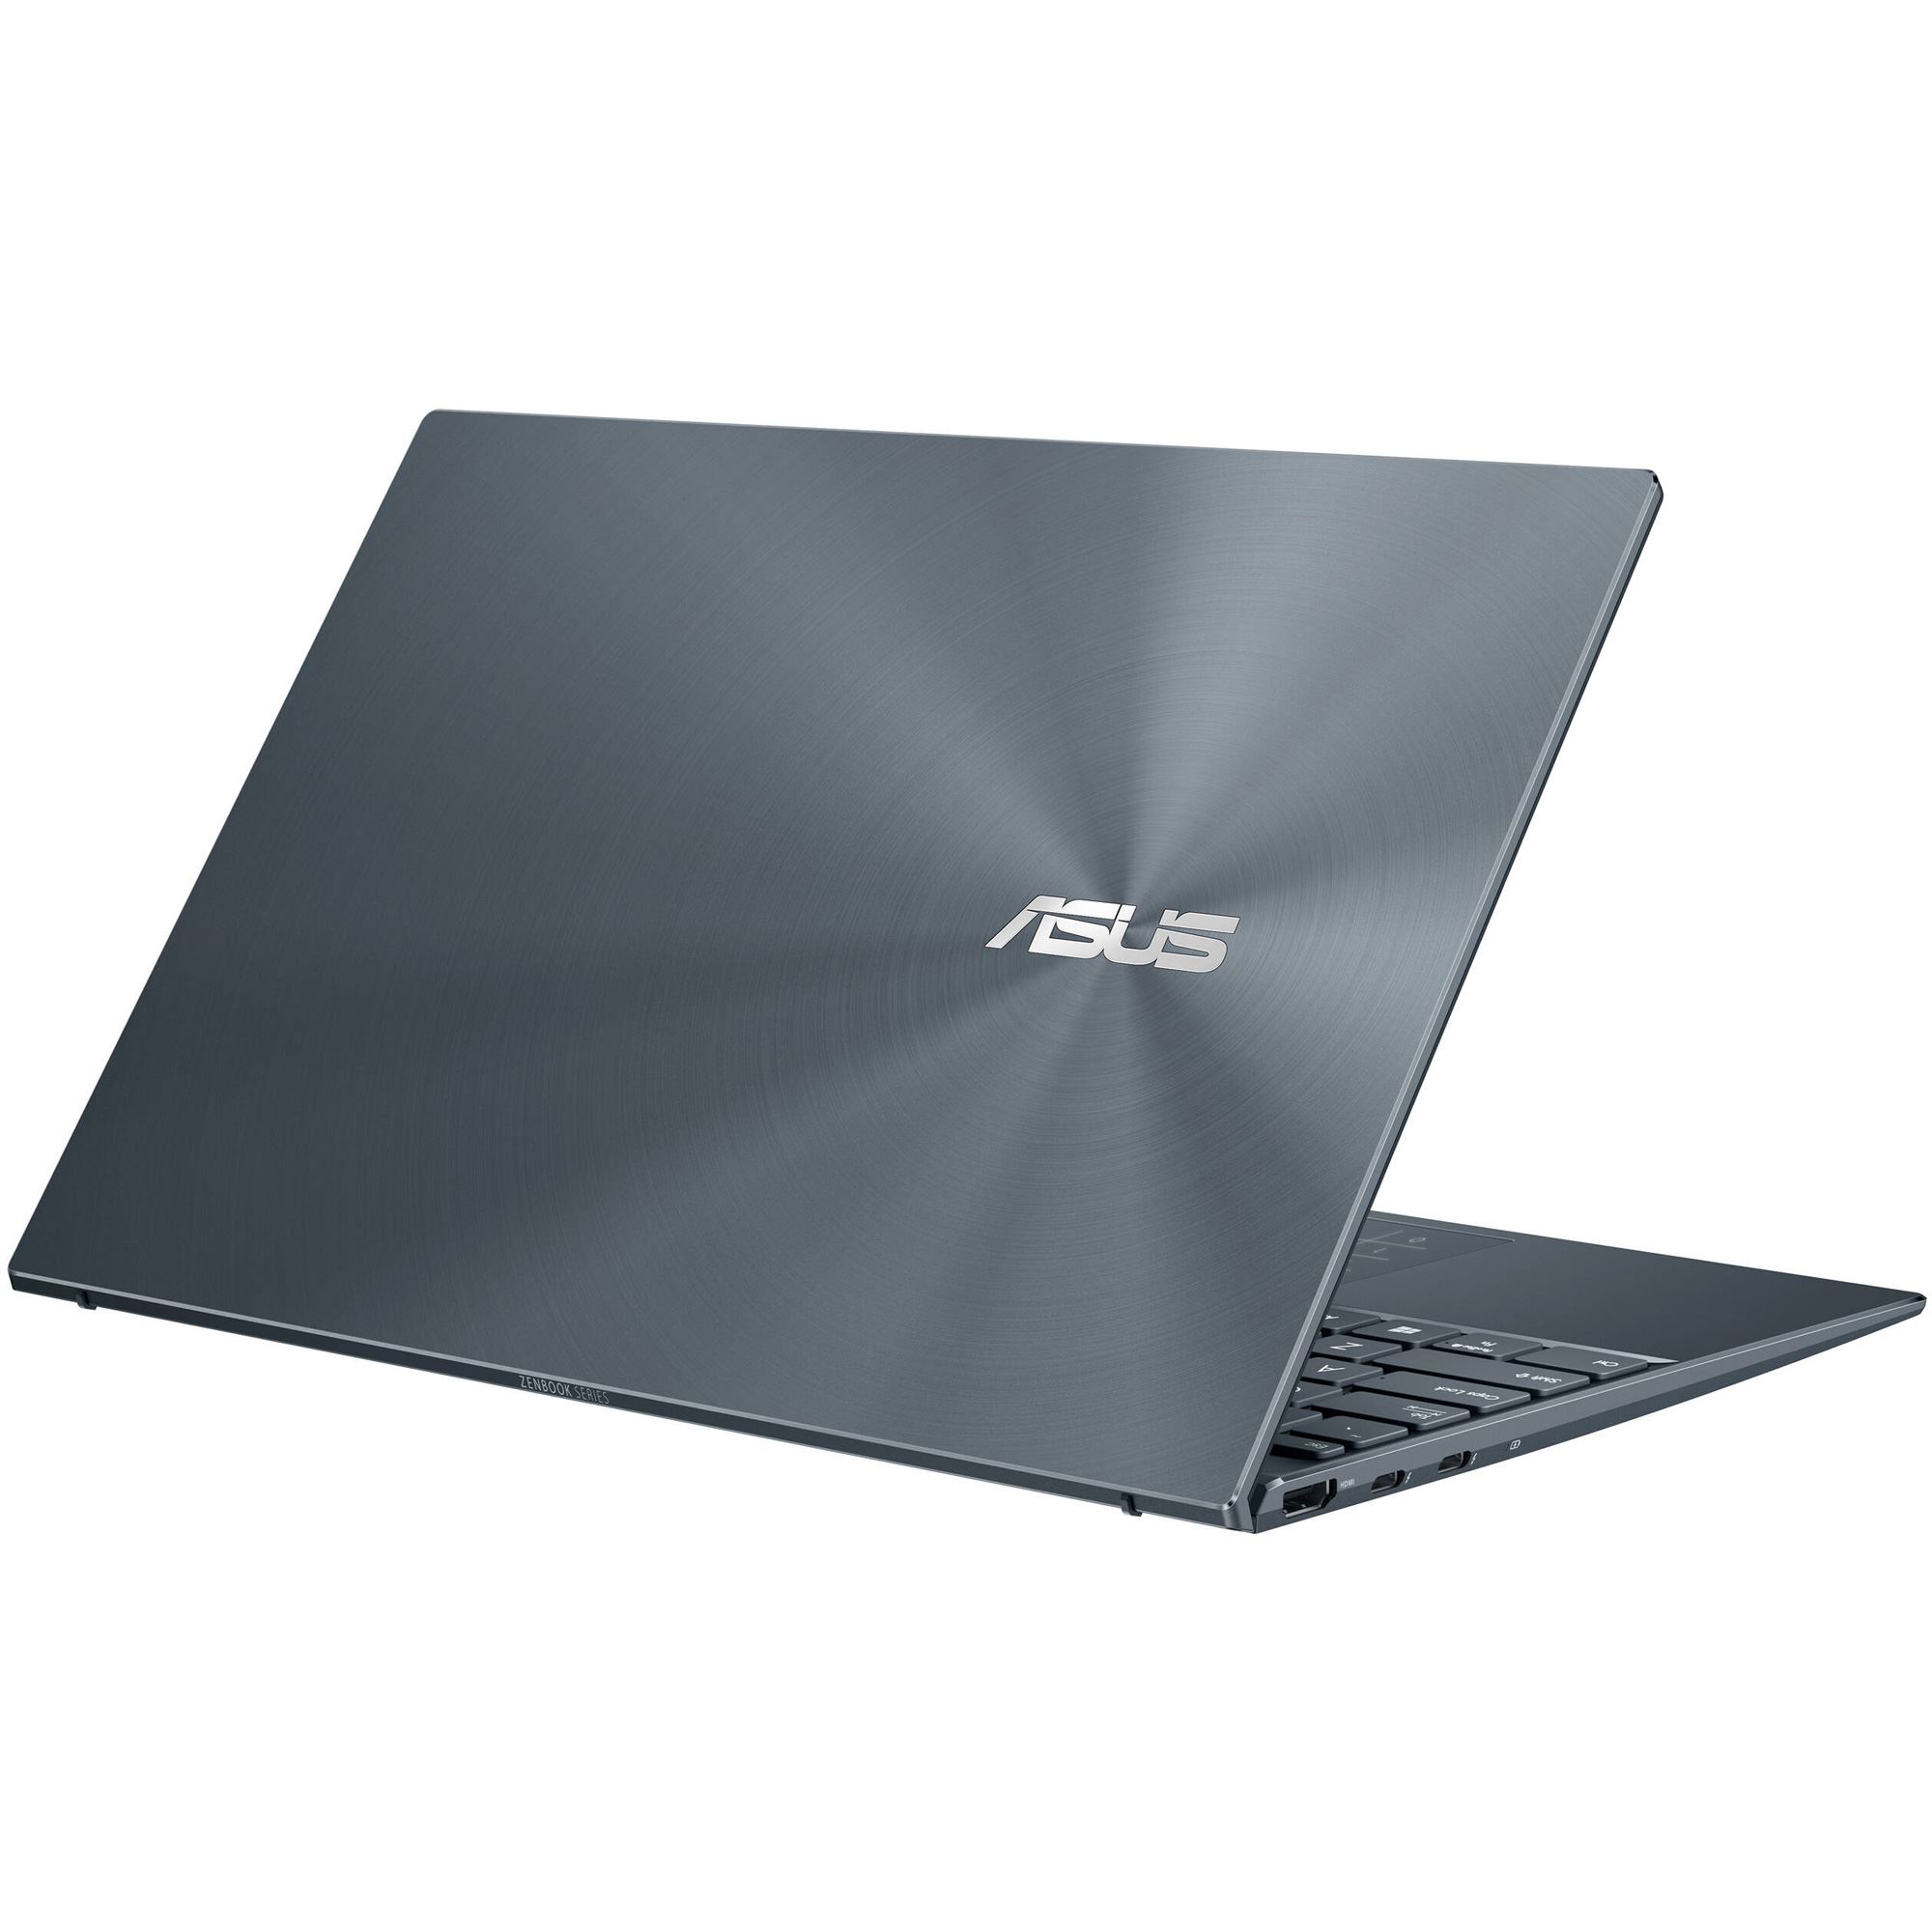 Laptop-Asus-UX425-Grey-9 (1)